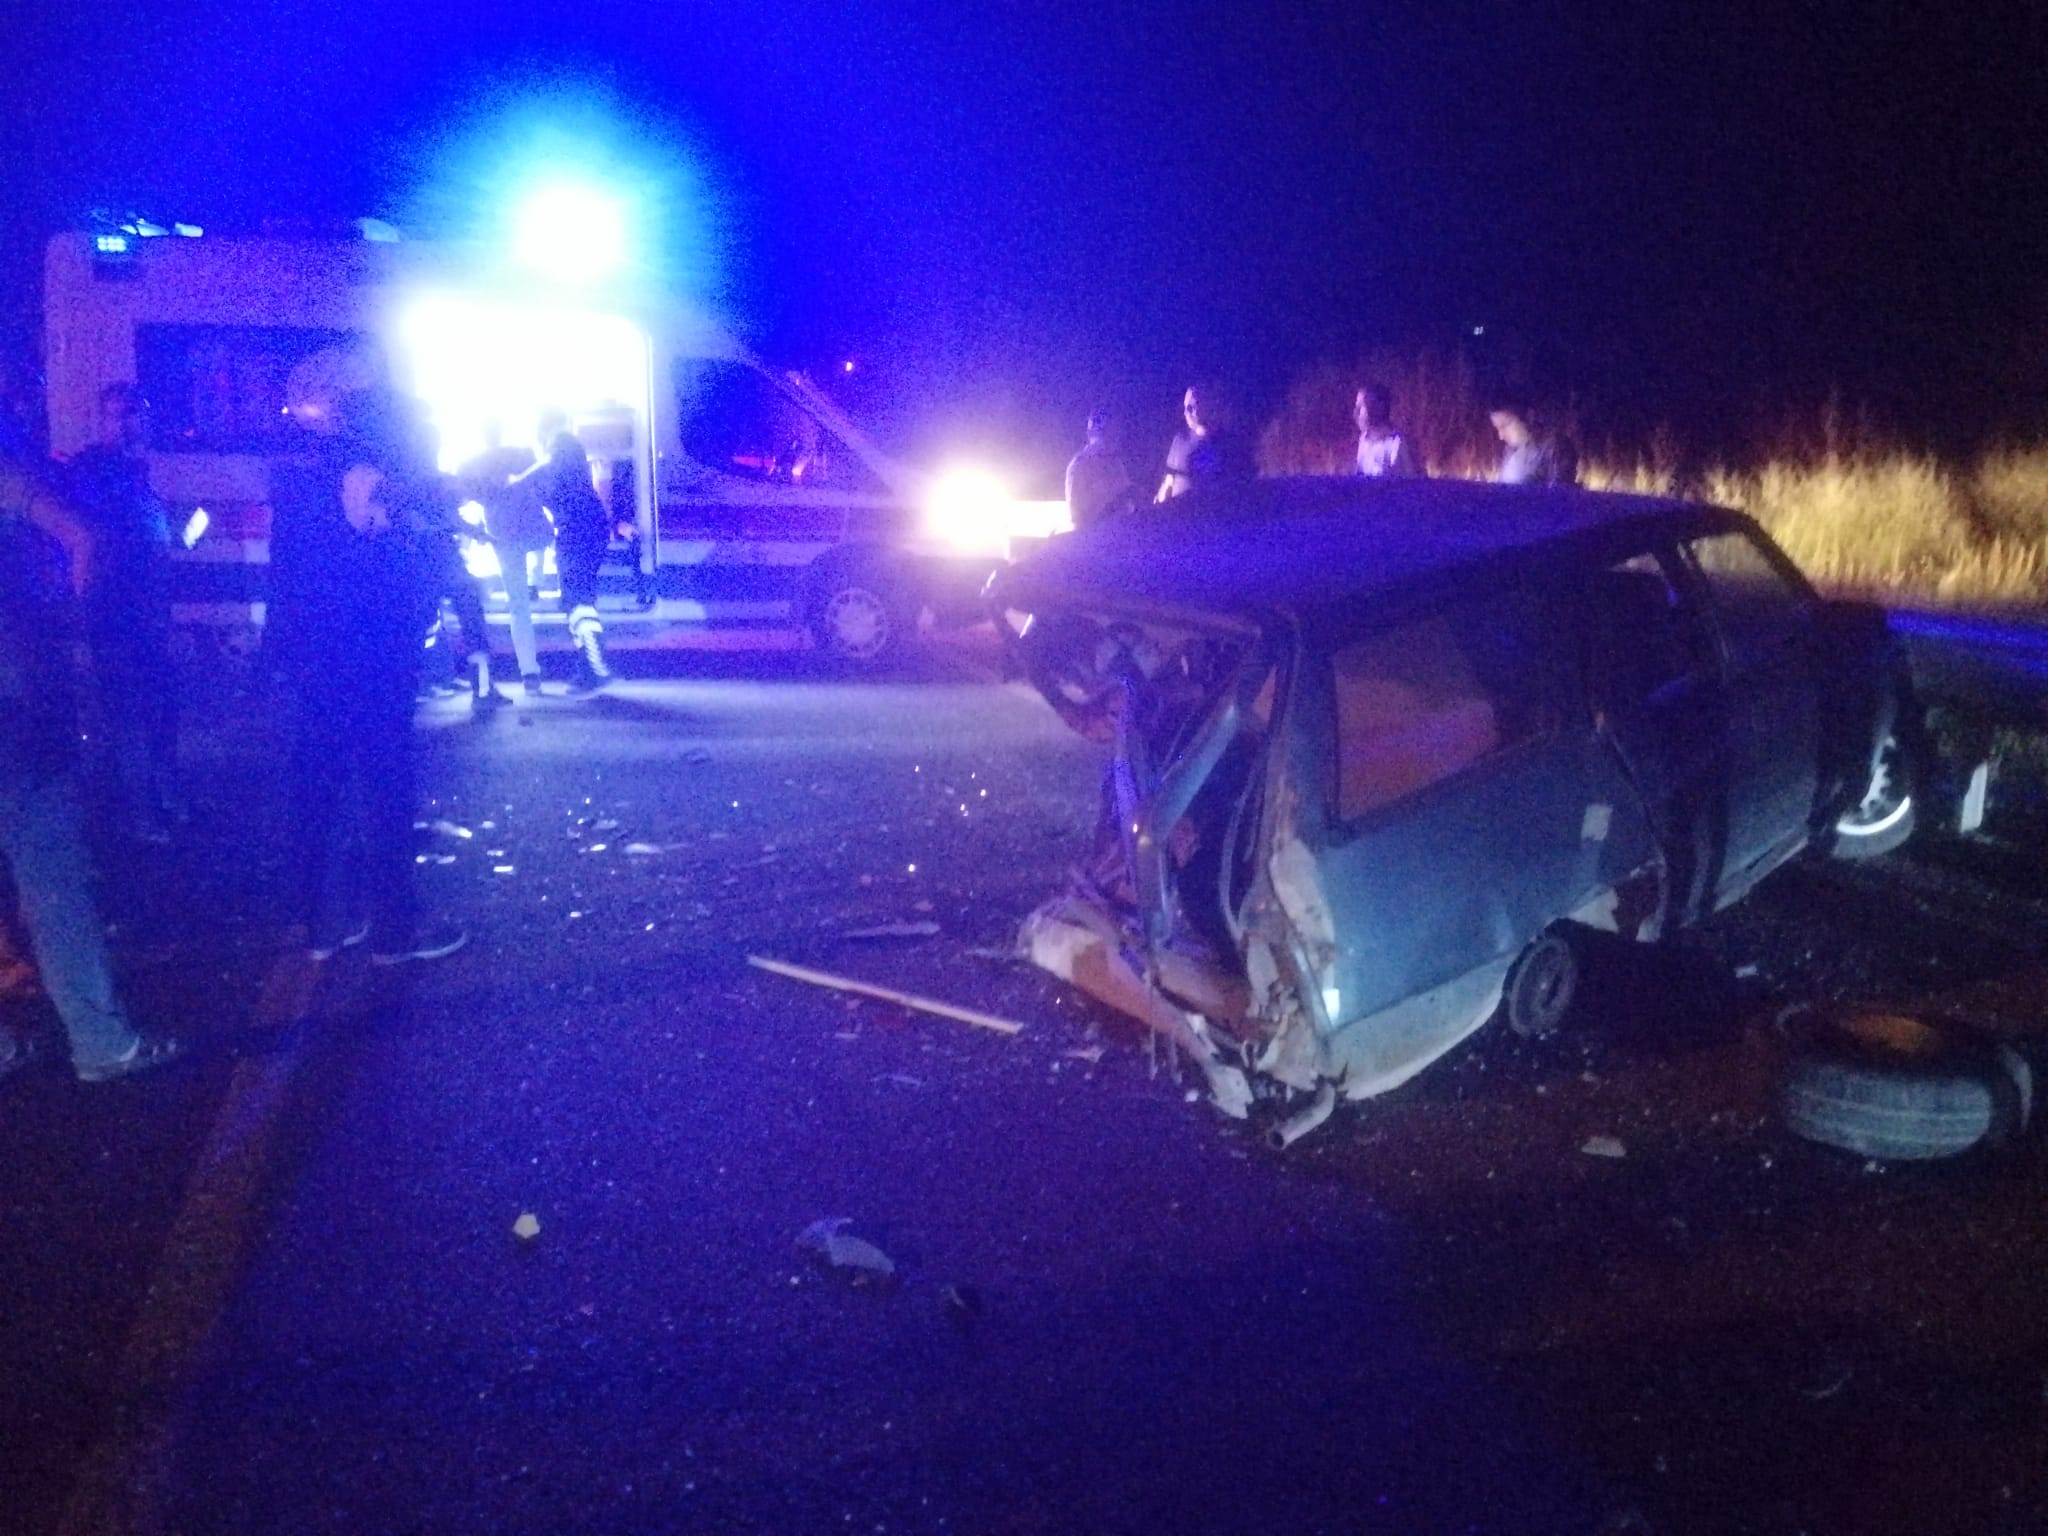 Darende yakınlarında gece meydana gelen trafik kazasında 1 kişi yaralanırken, araçlarda büyük hasar meydana geldi.